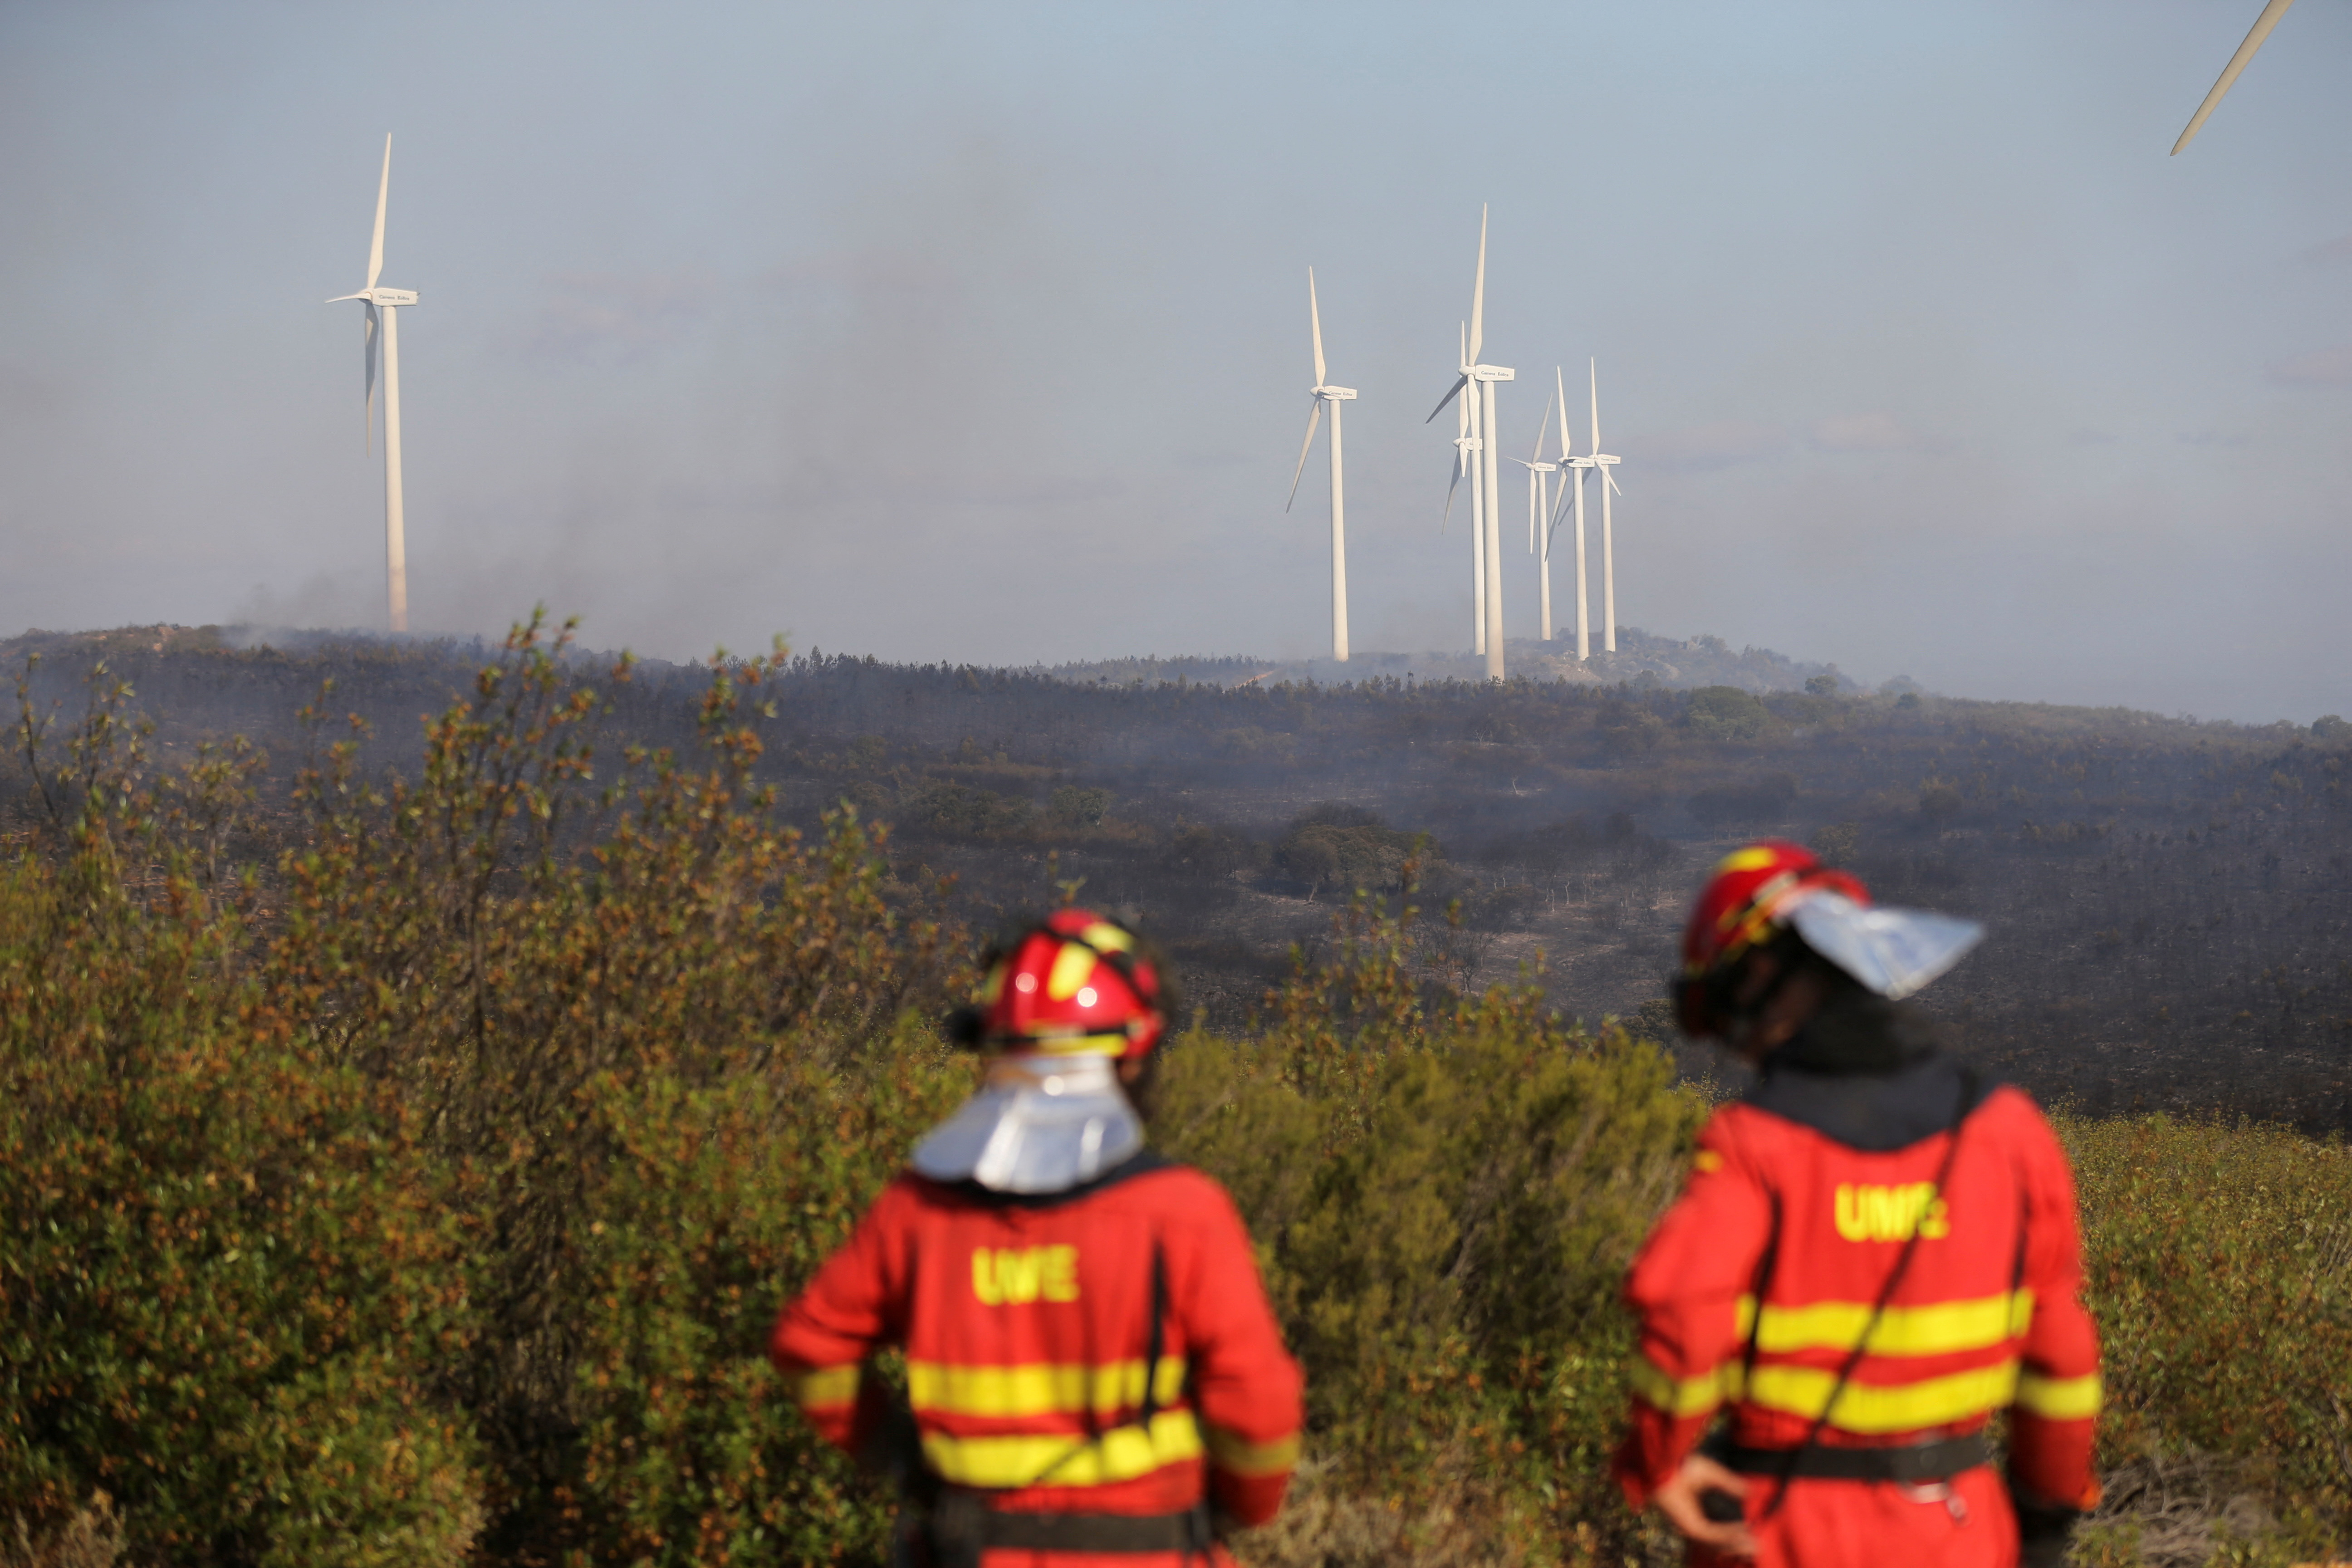 Los bomberos observan focos de fuego a lo lejos en Francia. España es otro de los paises altamente afectados por esta ola de calor que ayudó a la creación de incendios forestales.